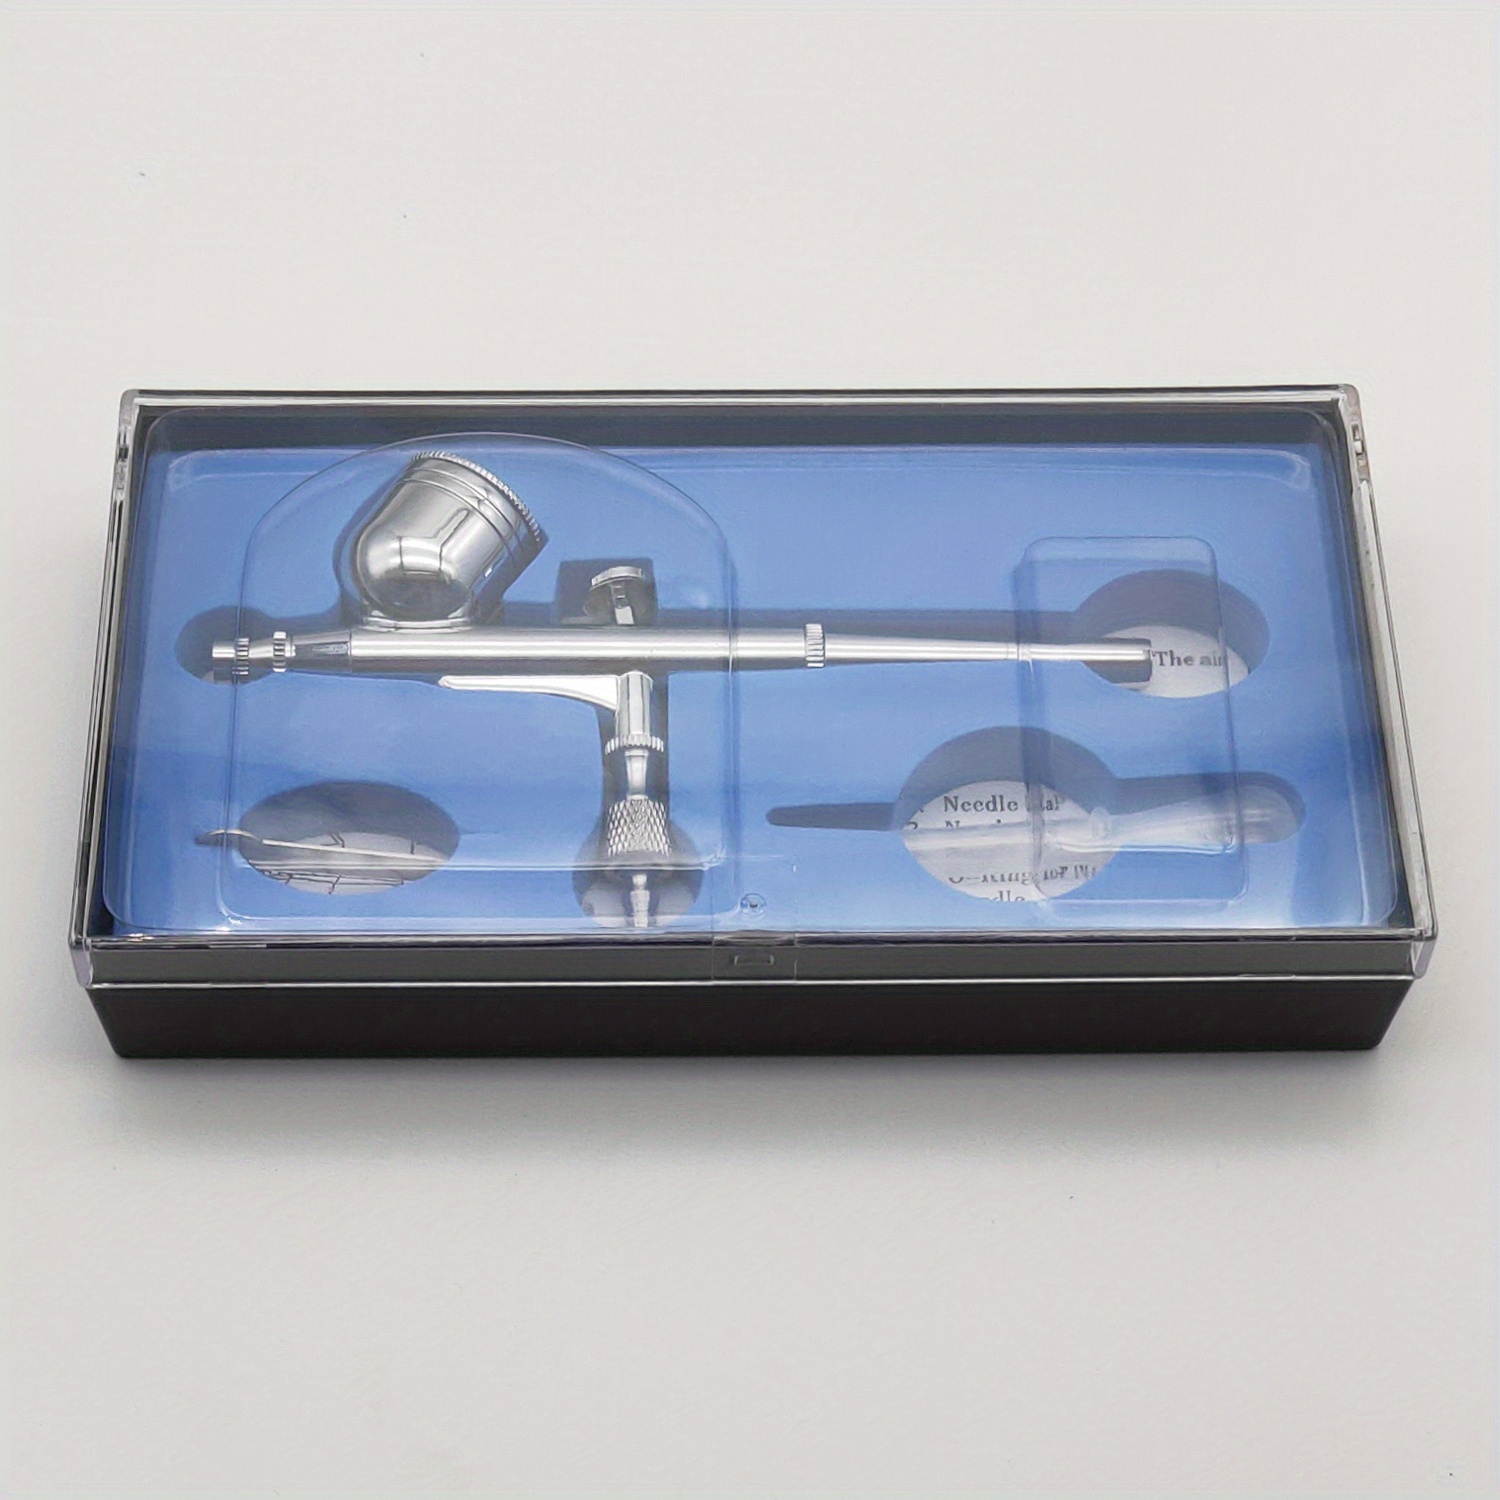 4 Airbrush Holders/model Airbrush Holder/miniature Model Air